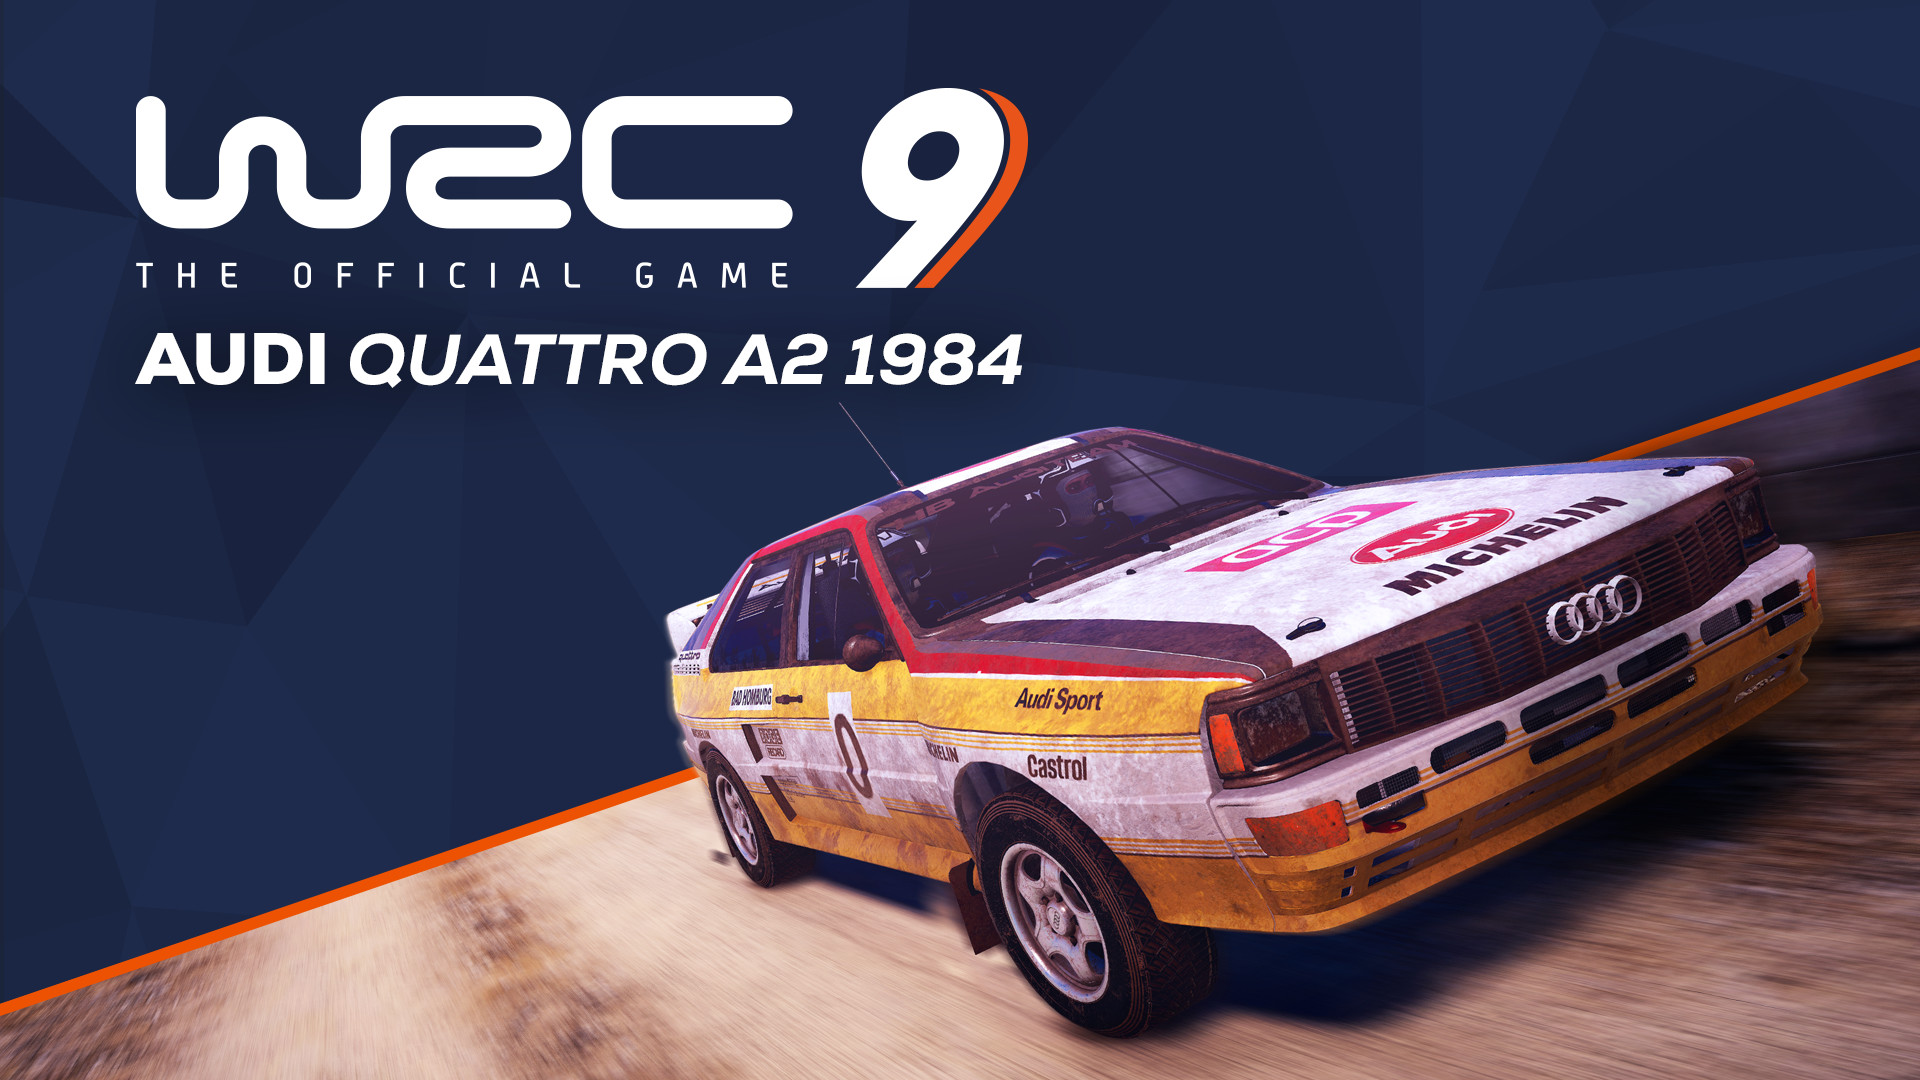 WRC 9 - Audi Quattro A2 1984 DLC Steam CD Key, $1.83